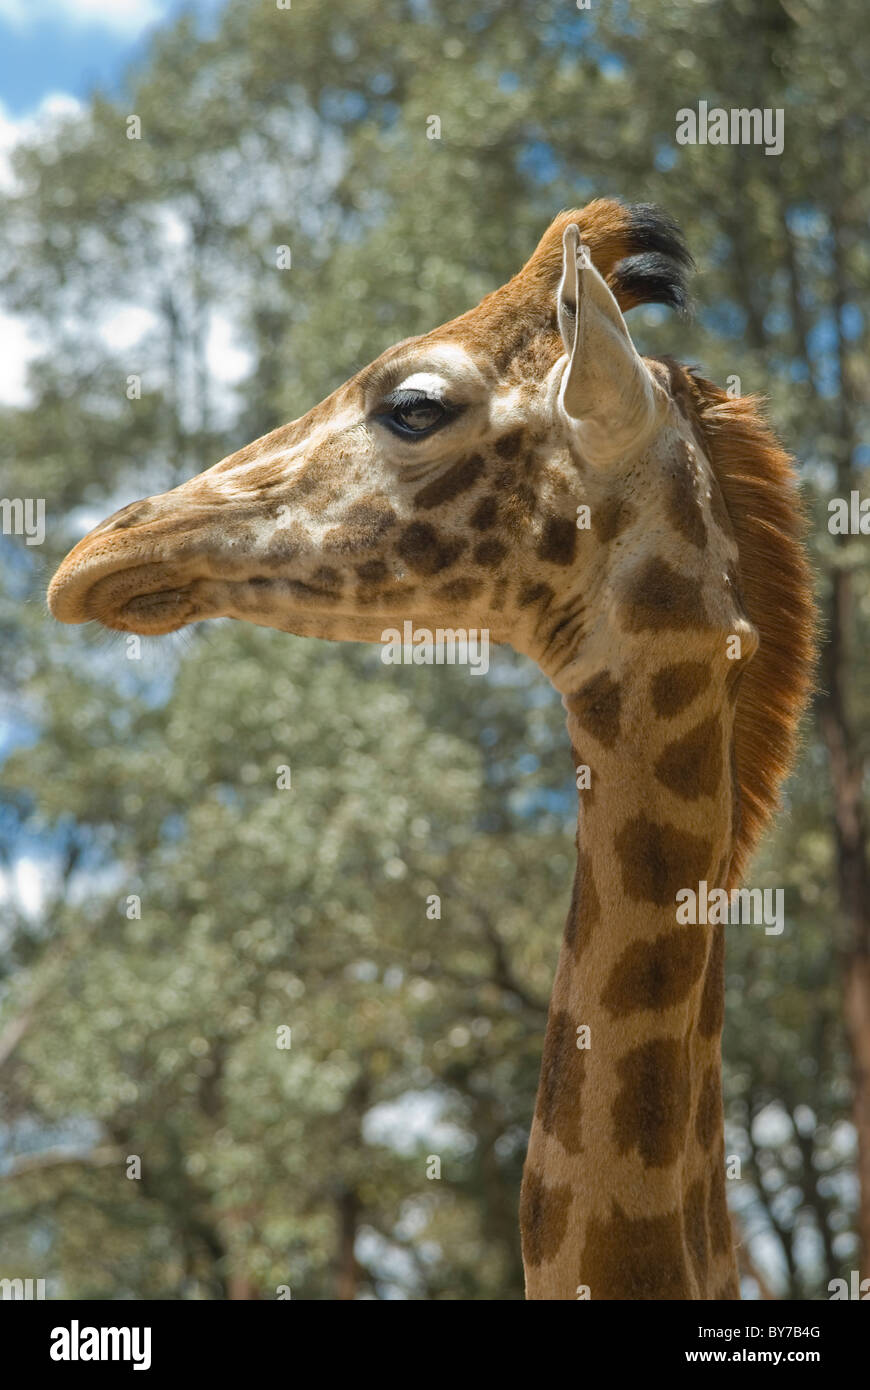 Profil d'une tête de girafe avec des arbres derrière Banque D'Images